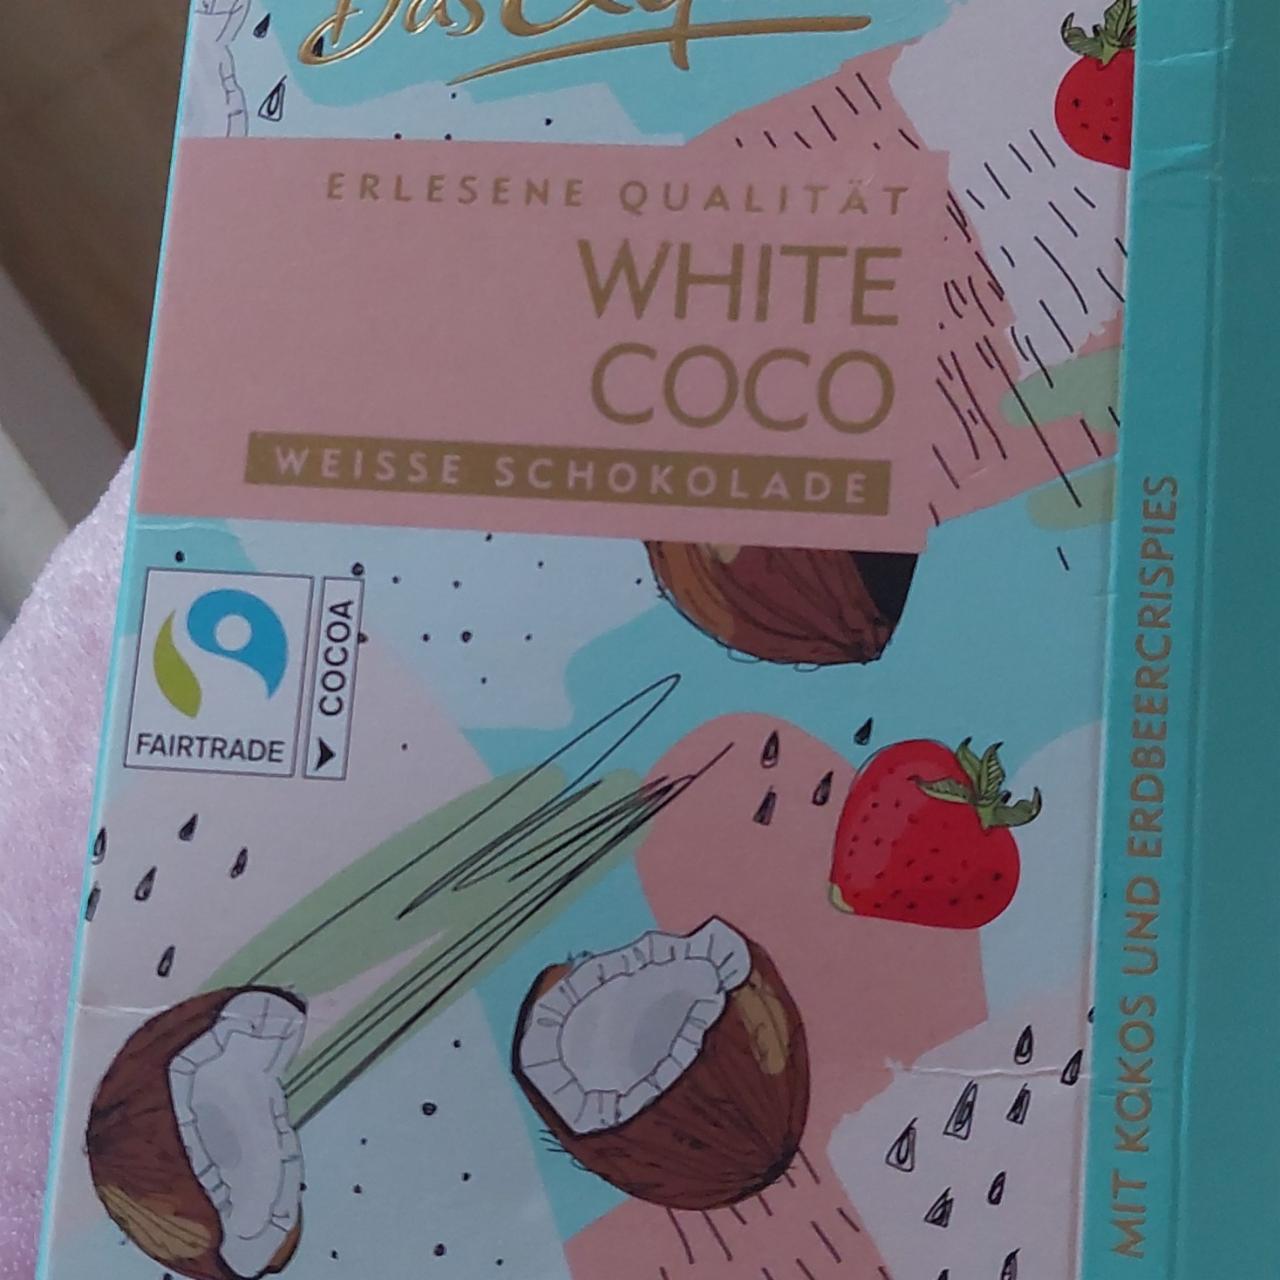 Фото - White coco kokos Erdbeercrispies Das Exquisite